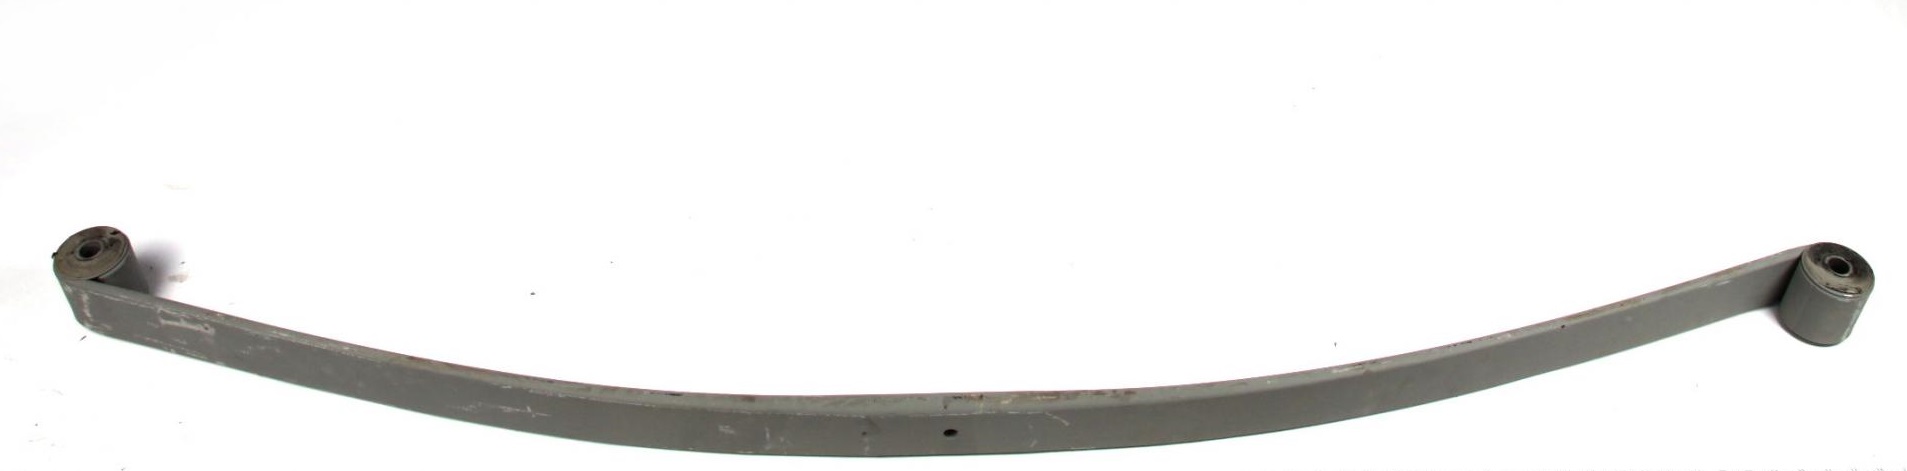 Рессора задняя коренная Iveco Daily 35c11 (спарка) (60/700/715) 19mm